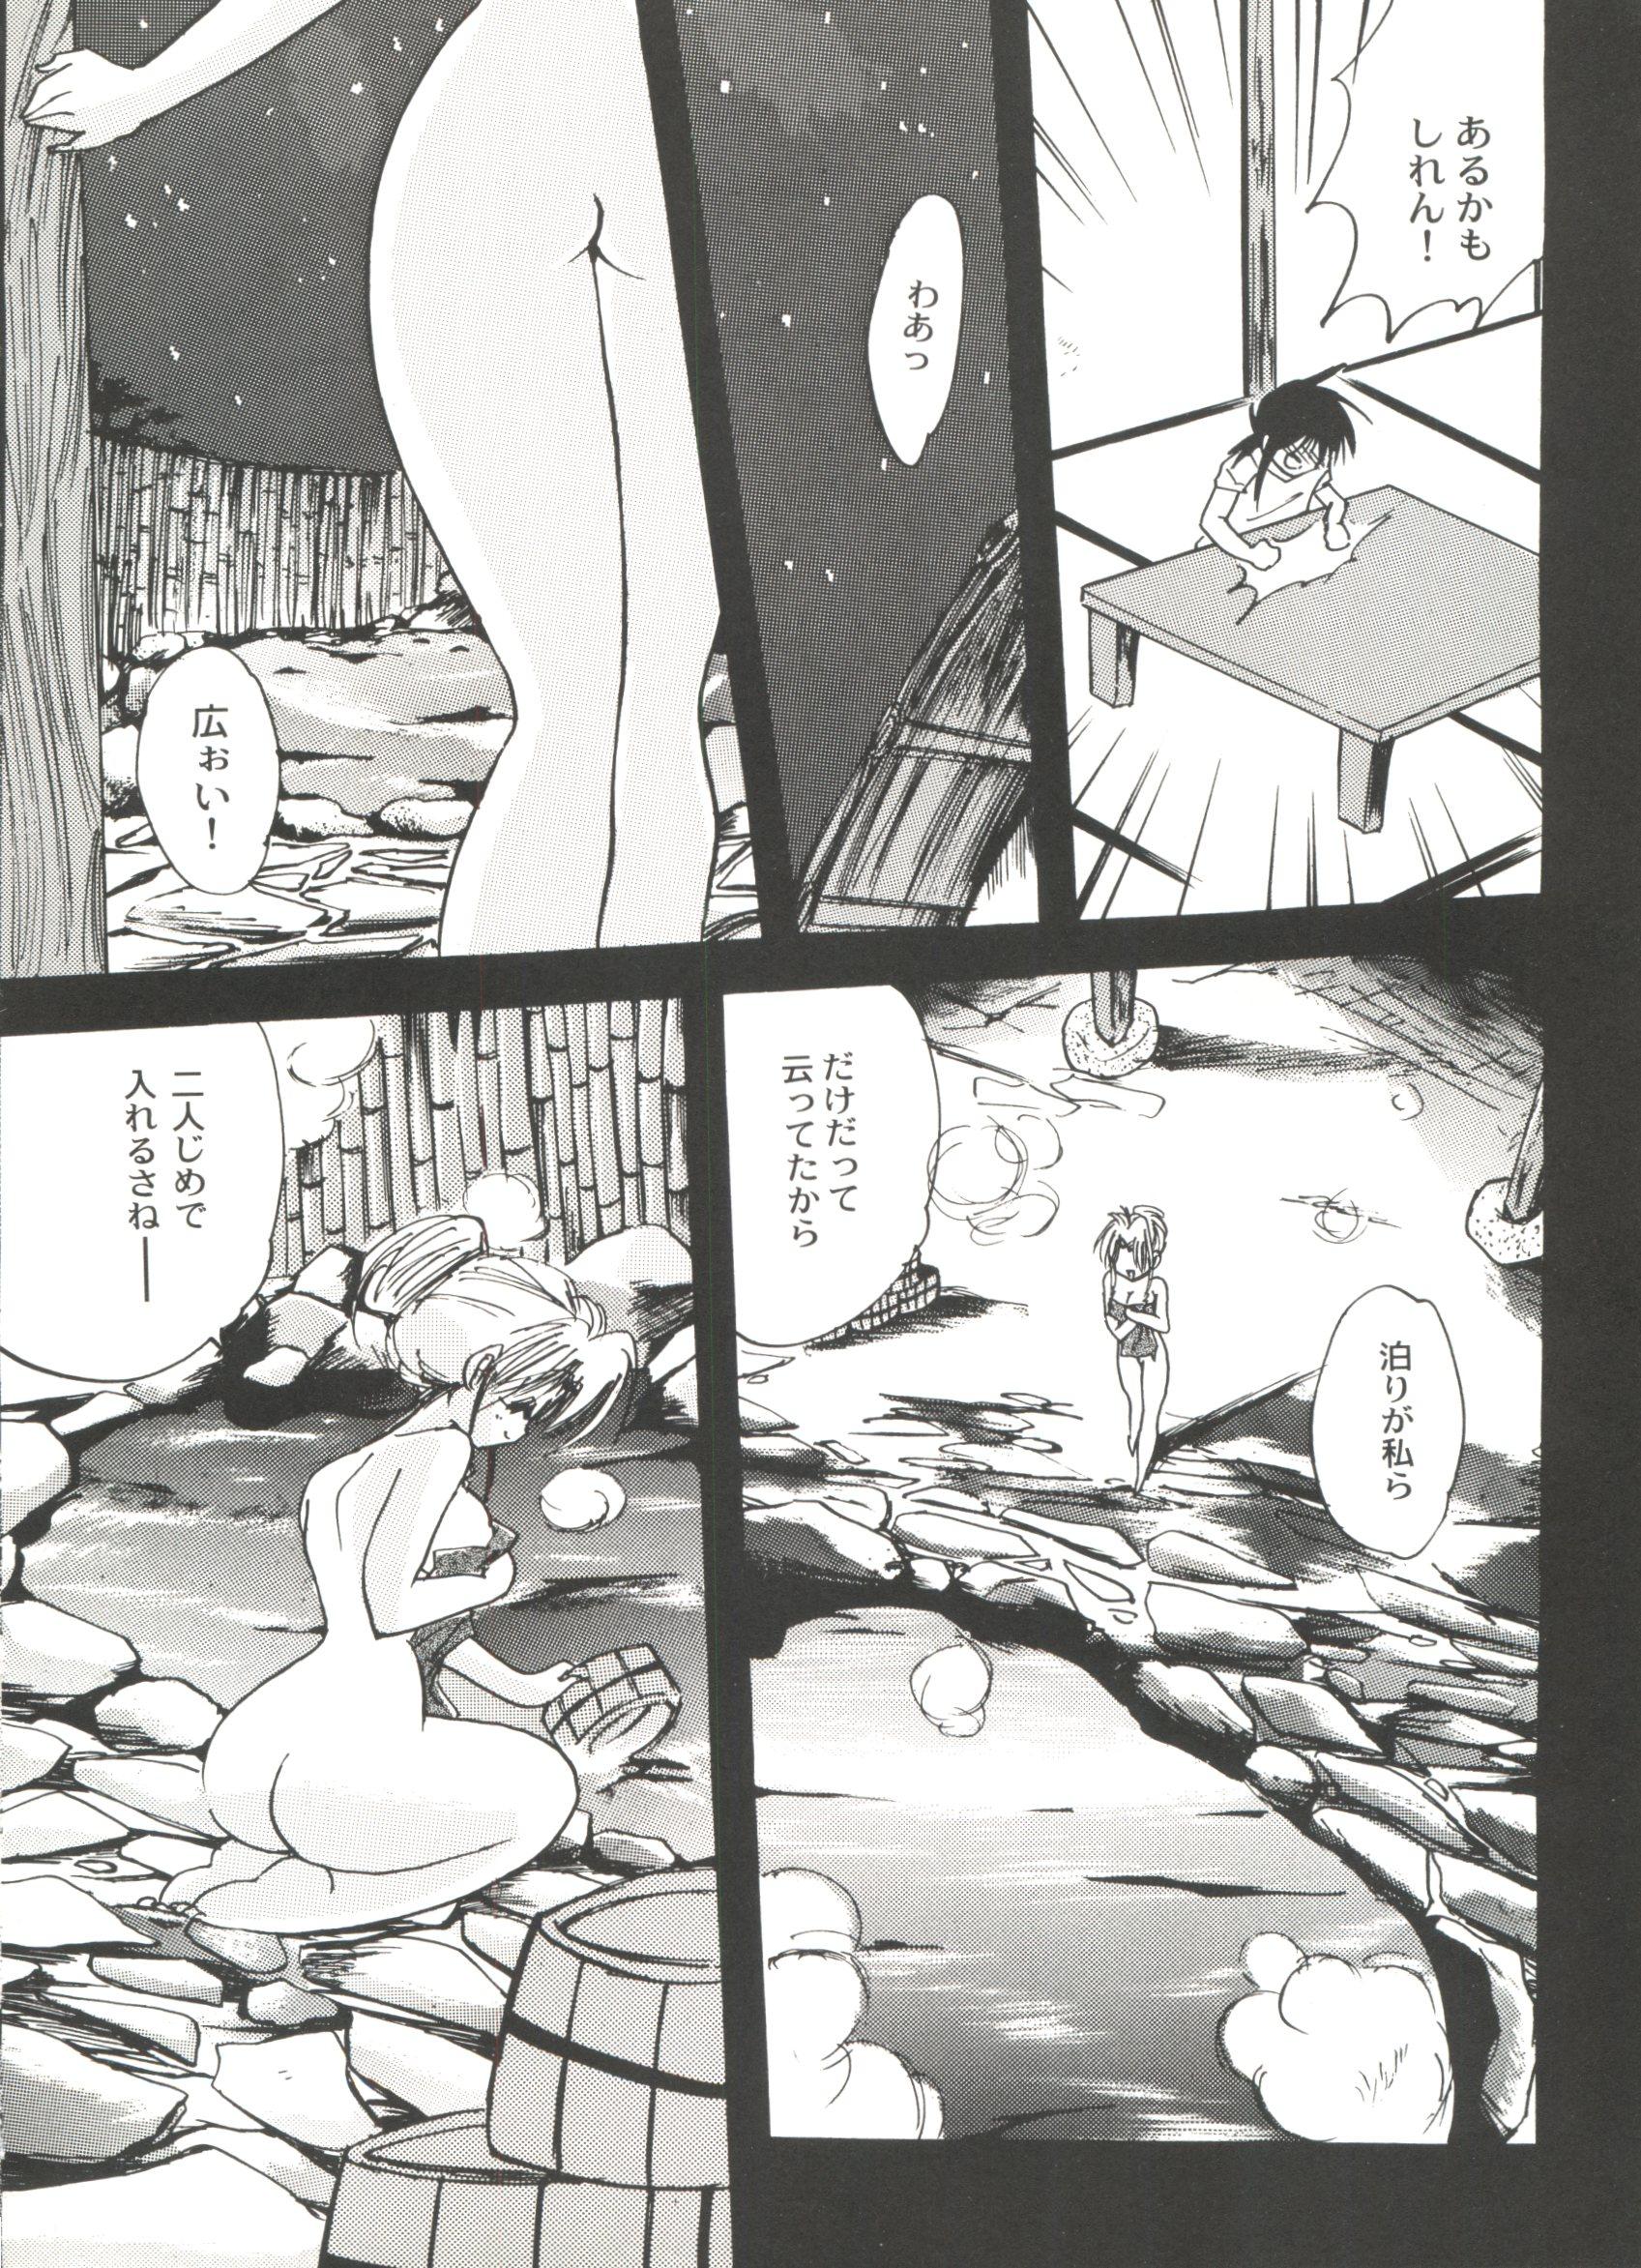 First Time Bishoujo Doujinshi Anthology Cute 5 - Cardcaptor sakura Magic knight rayearth Comic party Yu yu hakusho Kakyuusei Gostosas - Page 9